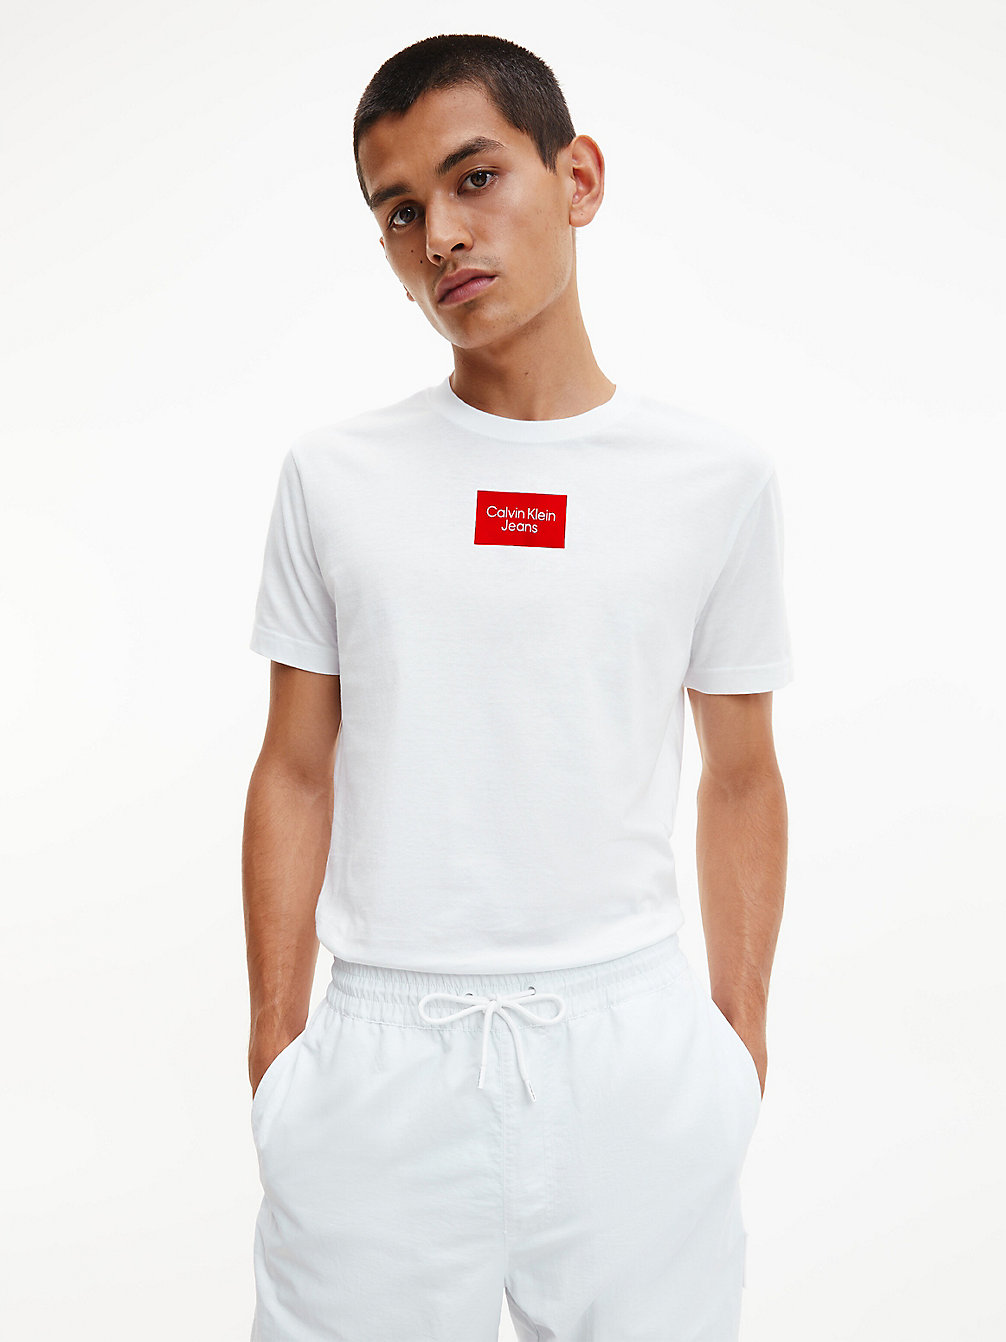 BRIGHT WHITE Schmales T-Shirt Aus Bio-Baumwolle undefined Herren Calvin Klein